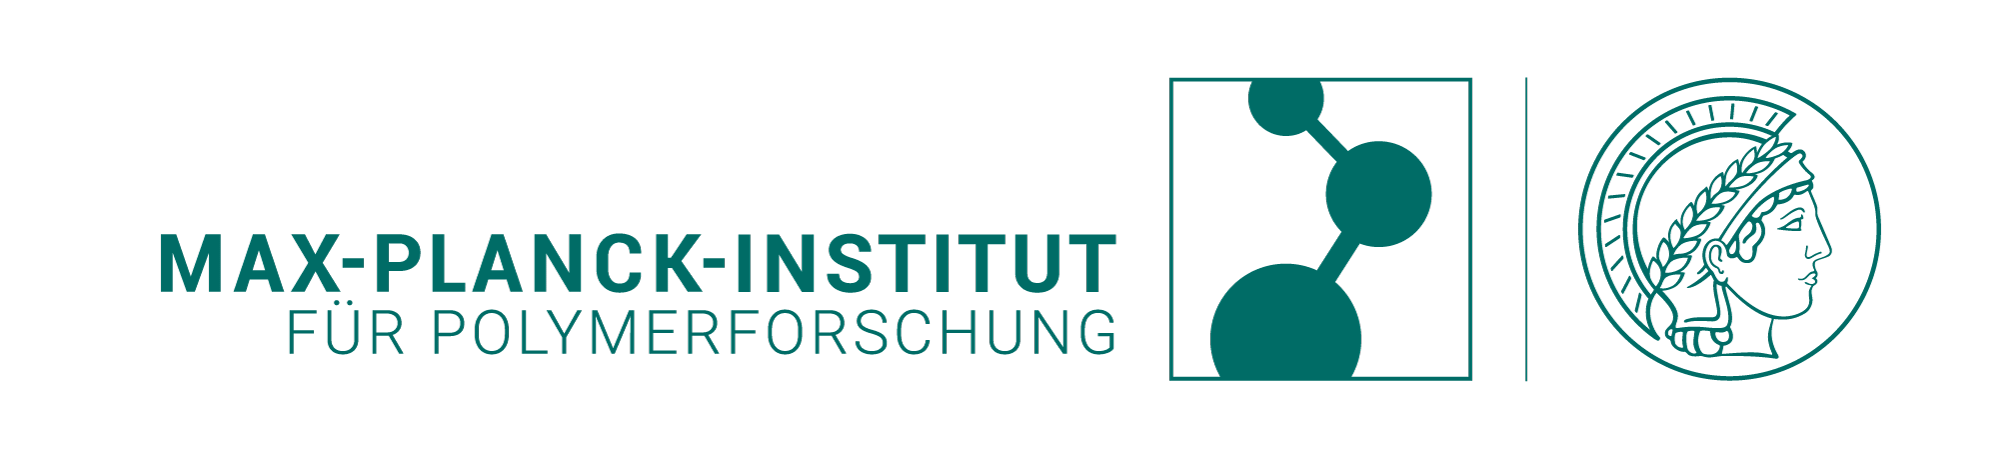 Logo: Max-Planck-Institut für Polymerforschung